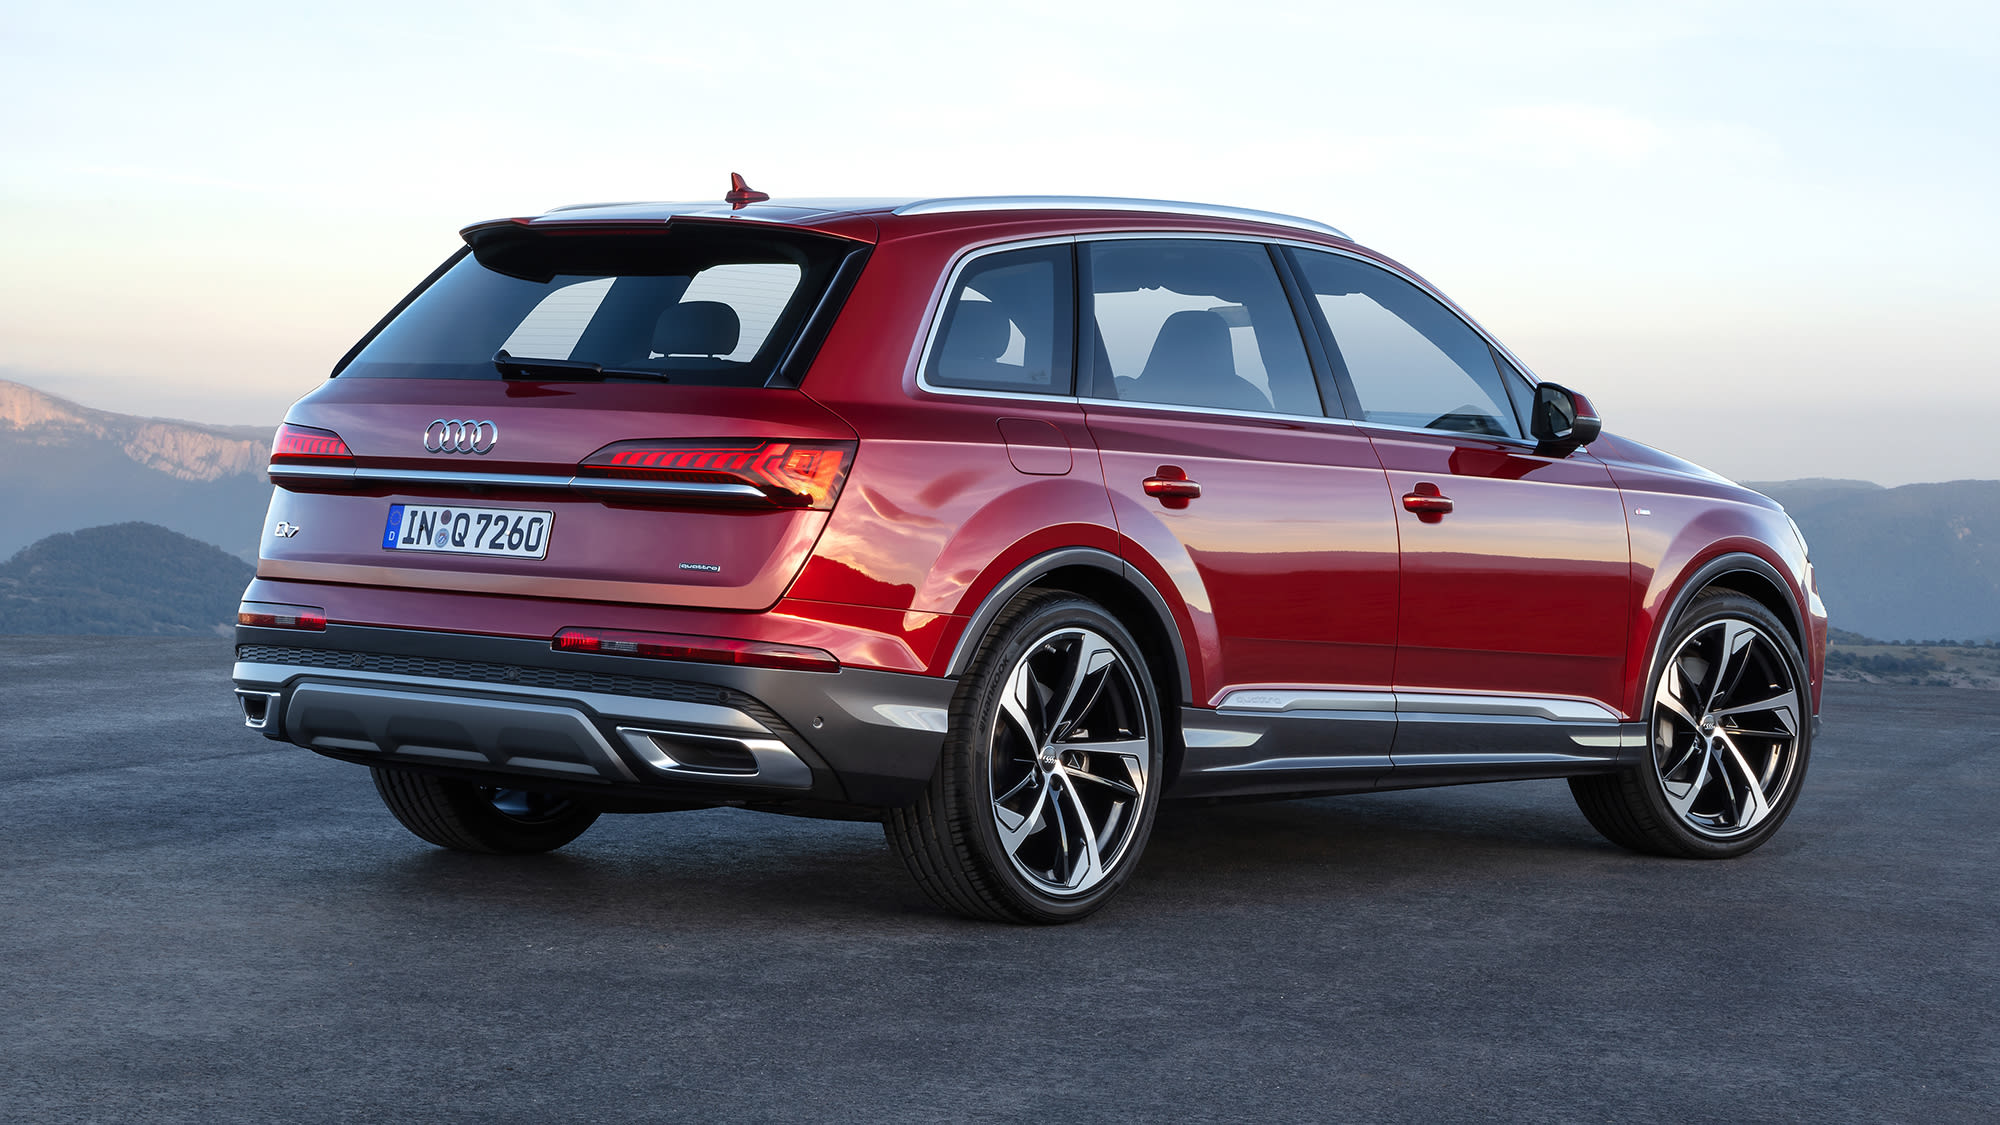 Audi Q7 2020 Release Date